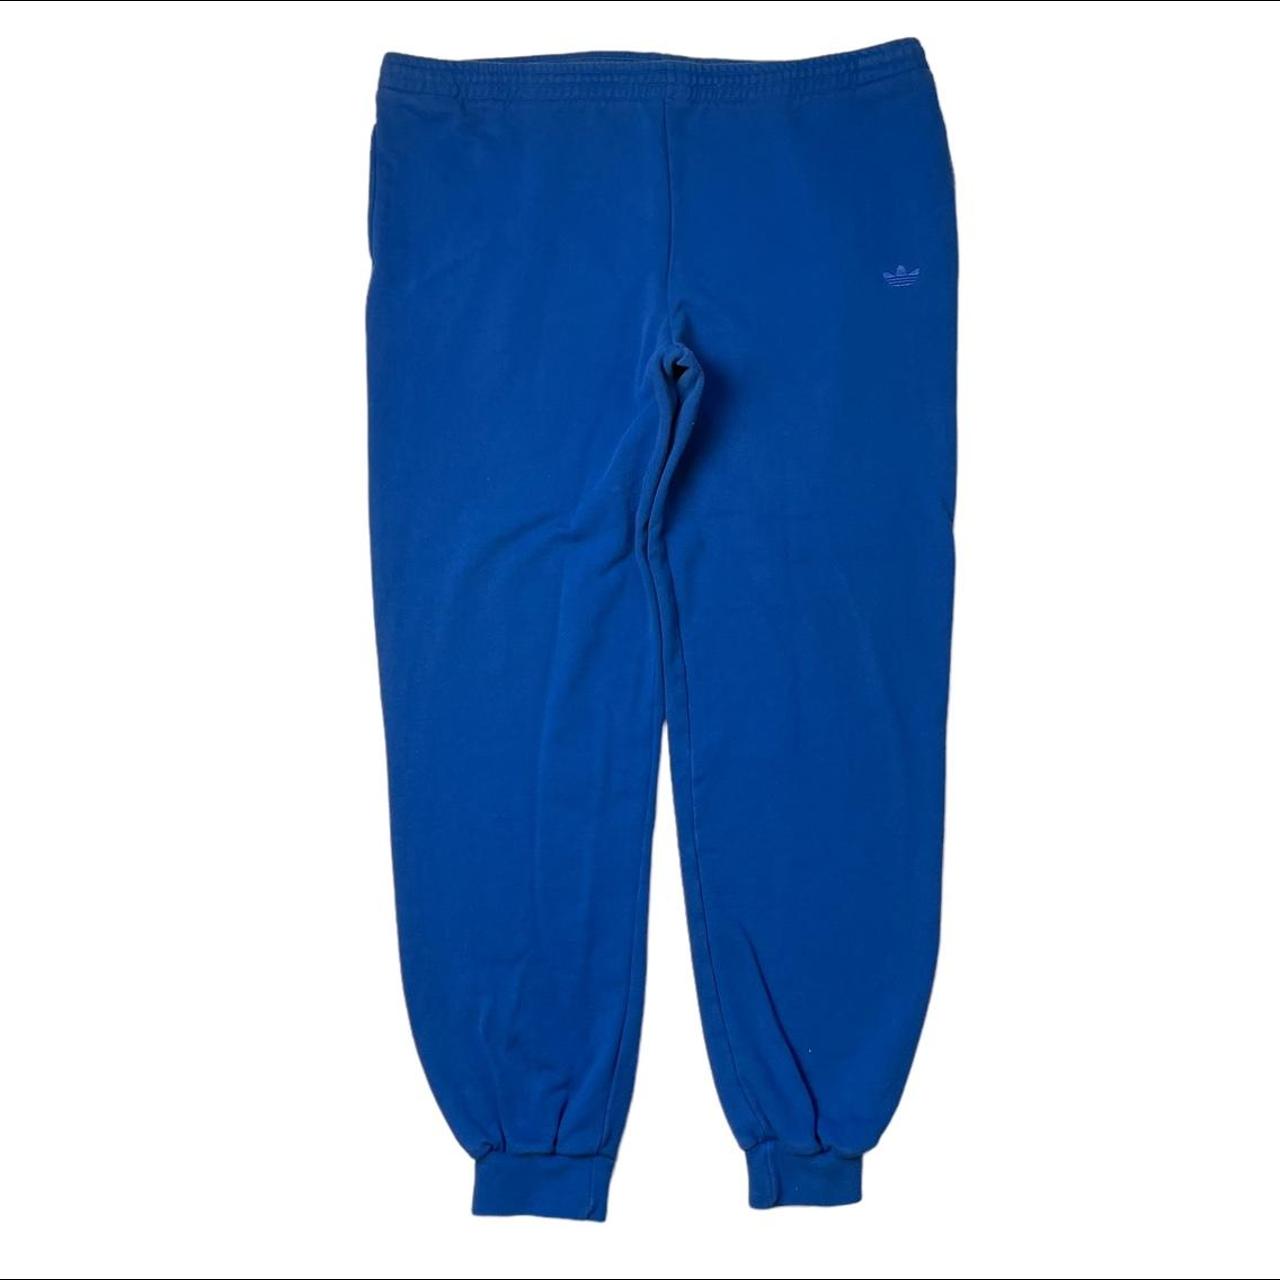 Vintage Adidas jogging bottoms blue 📌 Our... - Depop